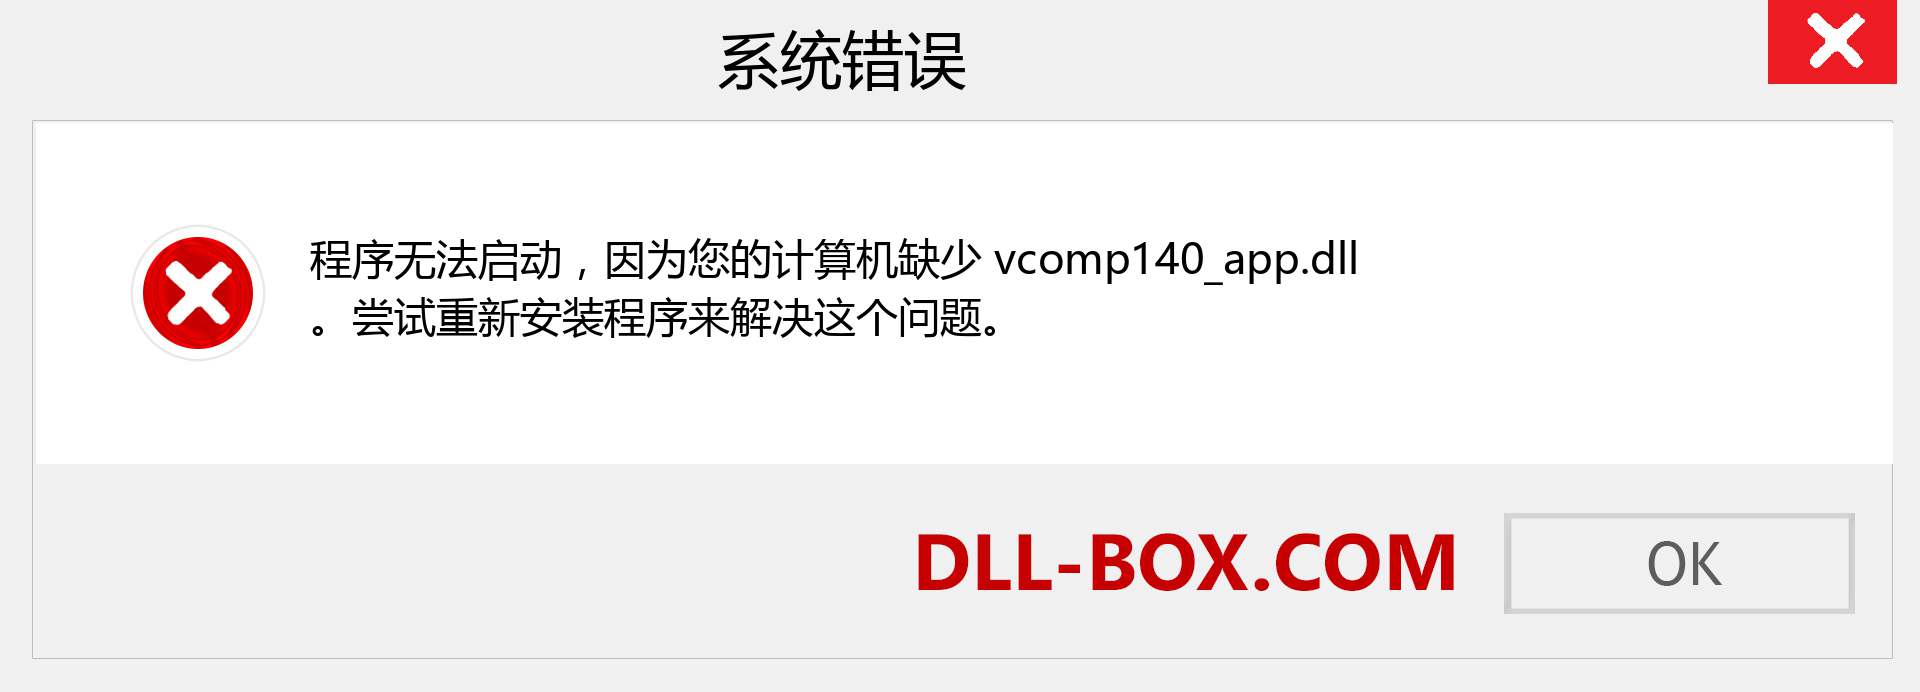 vcomp140_app.dll 文件丢失？。 适用于 Windows 7、8、10 的下载 - 修复 Windows、照片、图像上的 vcomp140_app dll 丢失错误